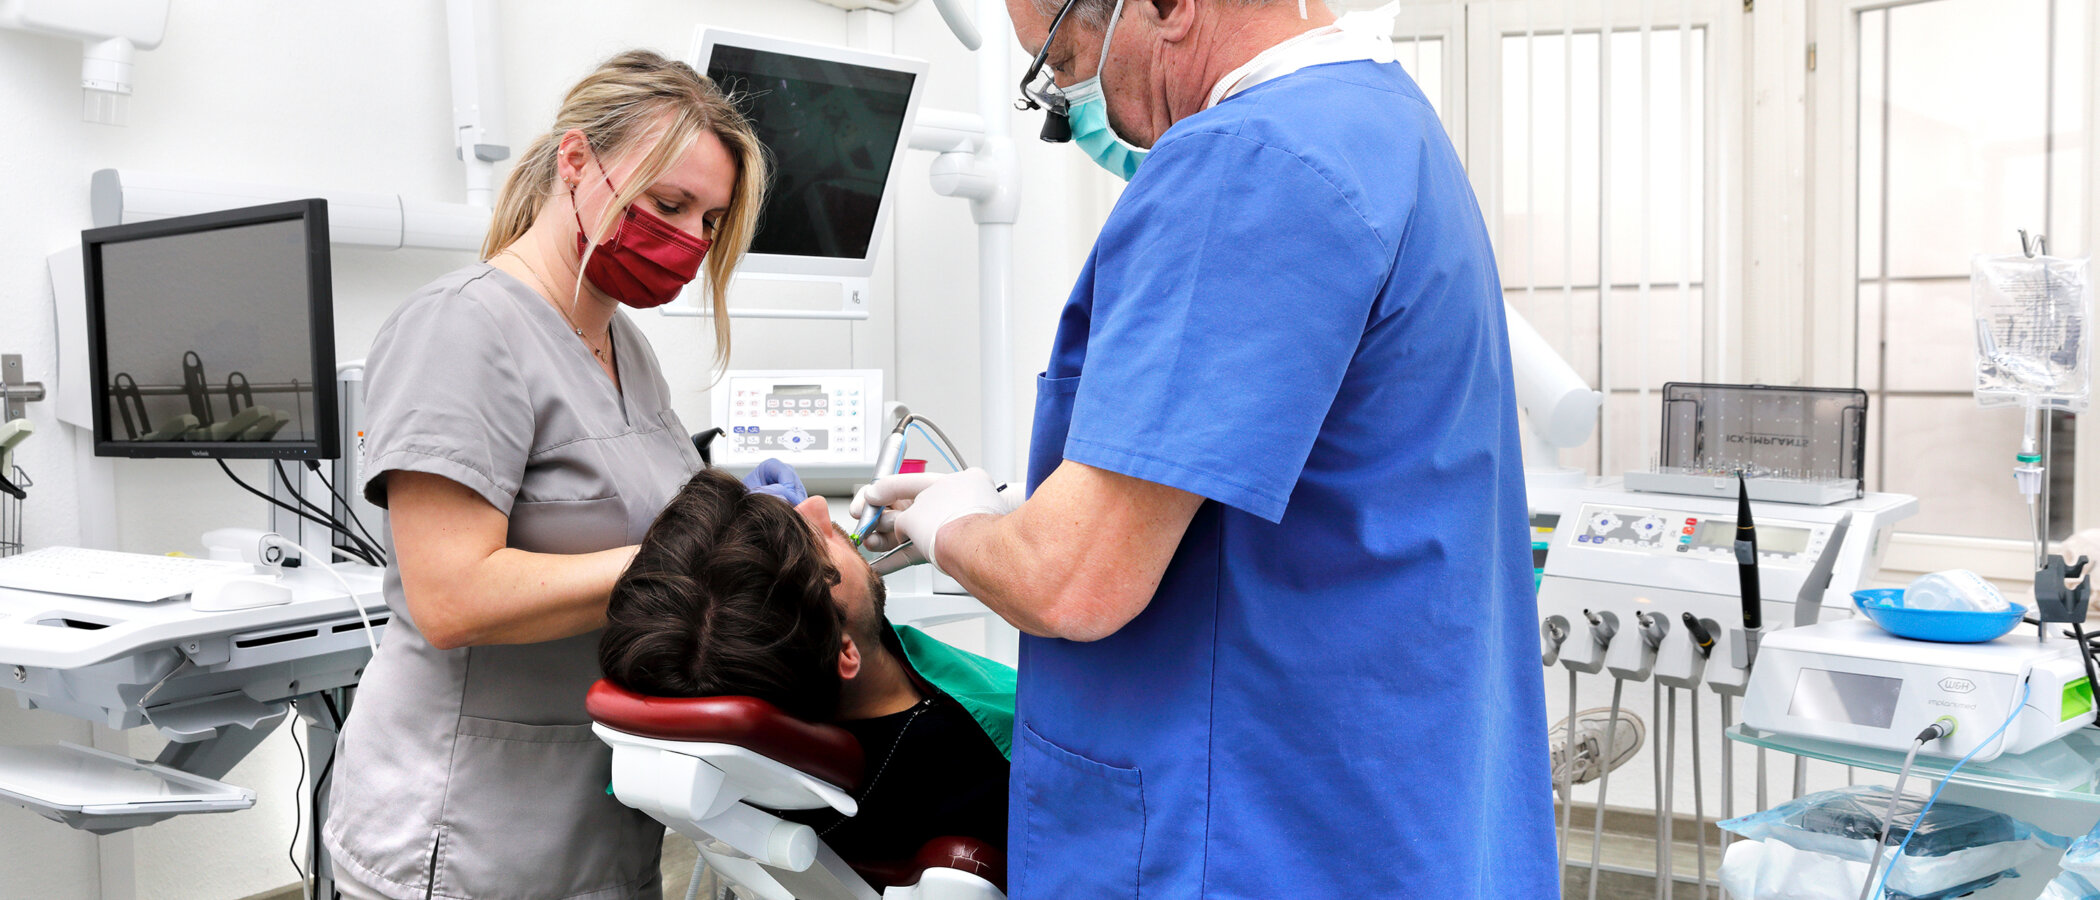 Implantate Zahnarzt Praxis Wenz in Frankfurt am Main